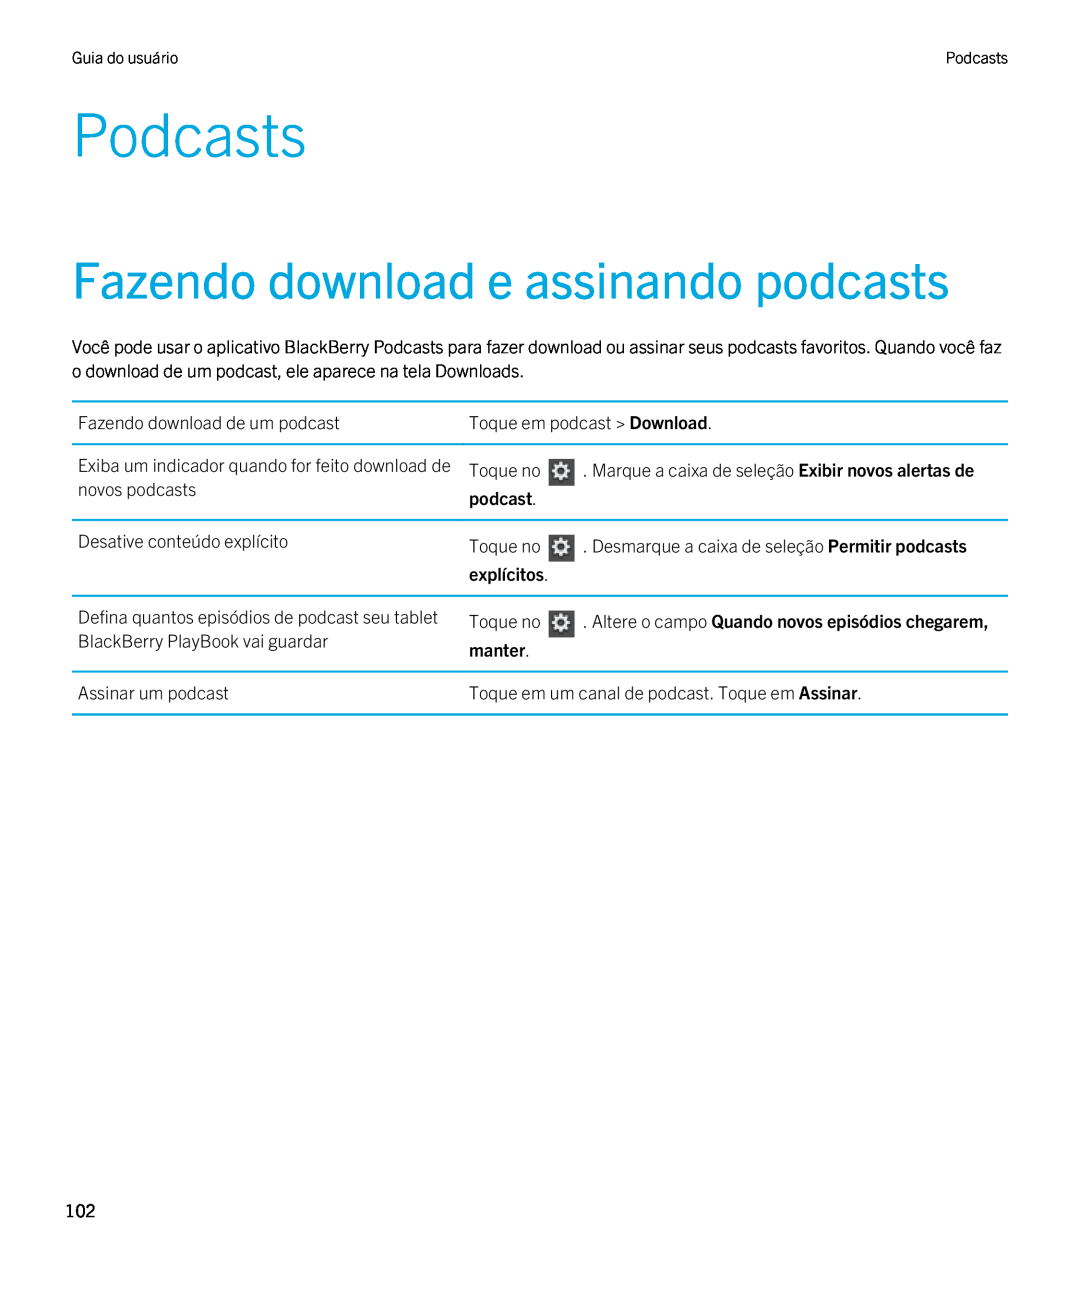 Blackberry 2.0.1 manual Podcasts, Fazendo download e assinando podcasts, explícitos, manter 